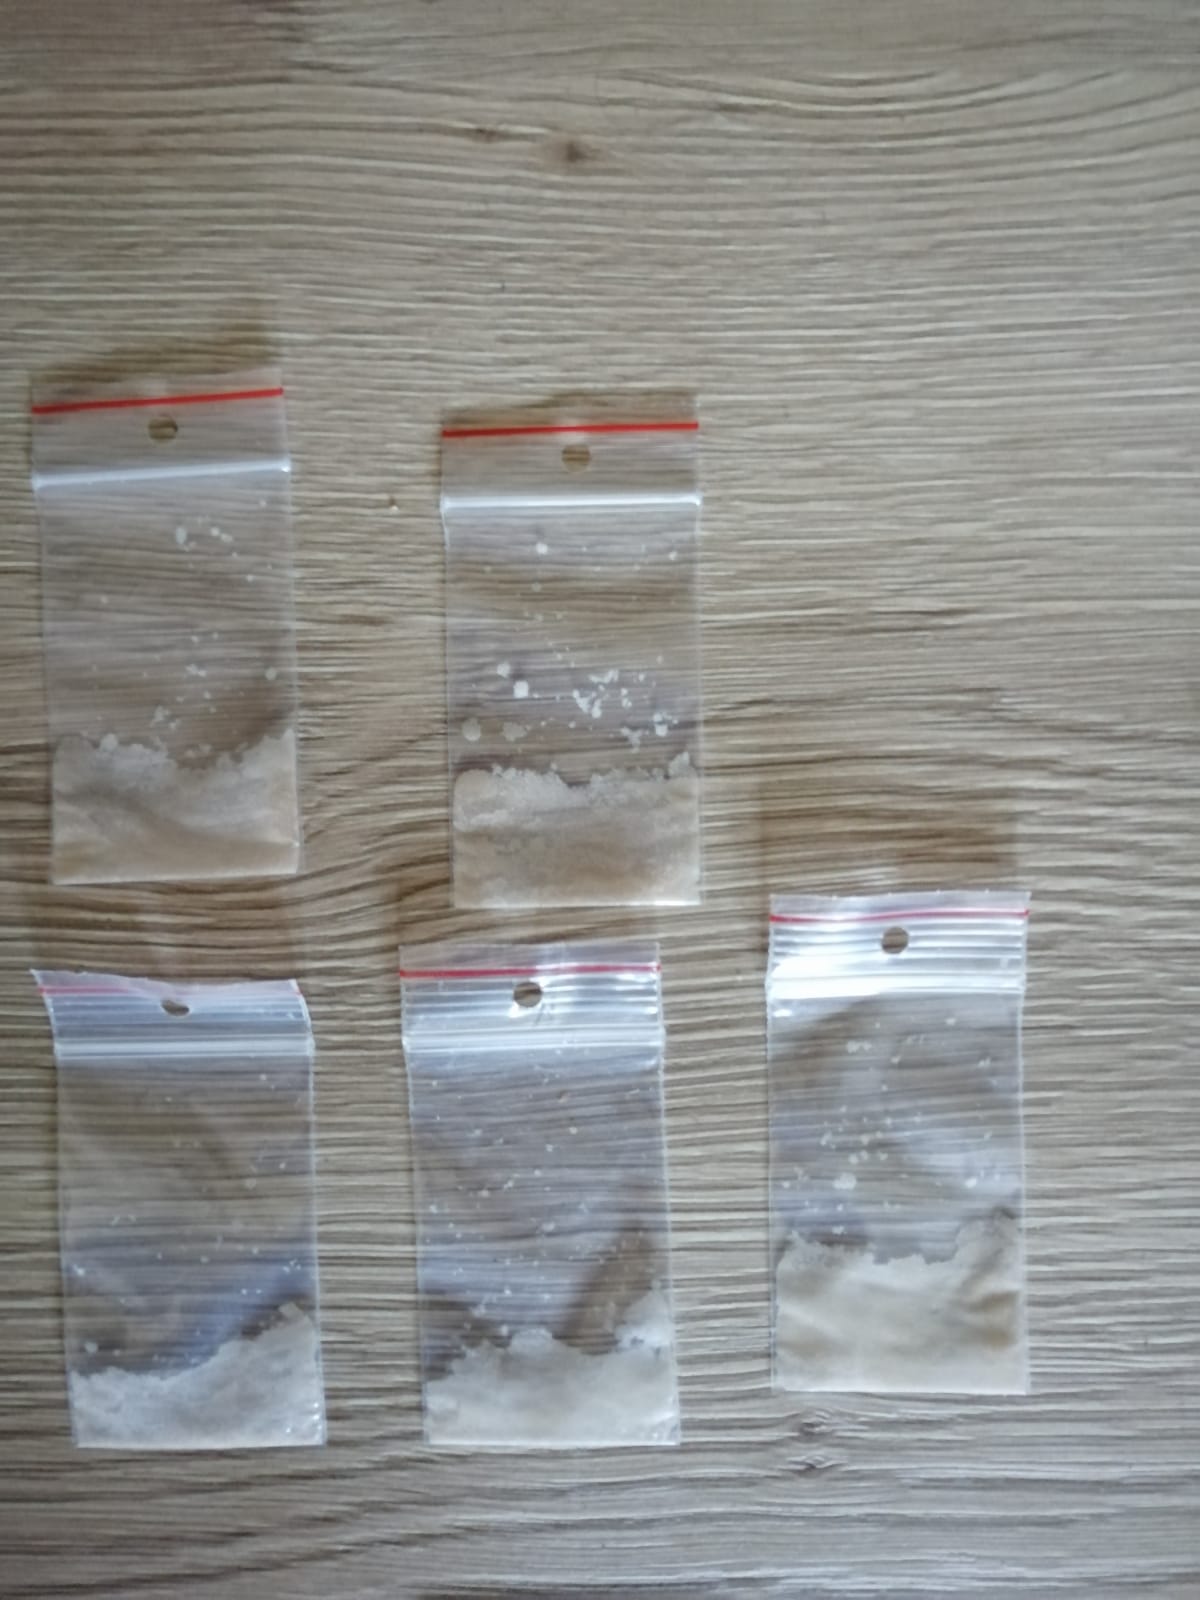 8 kompopnenty k výrobě drog (8).jpg